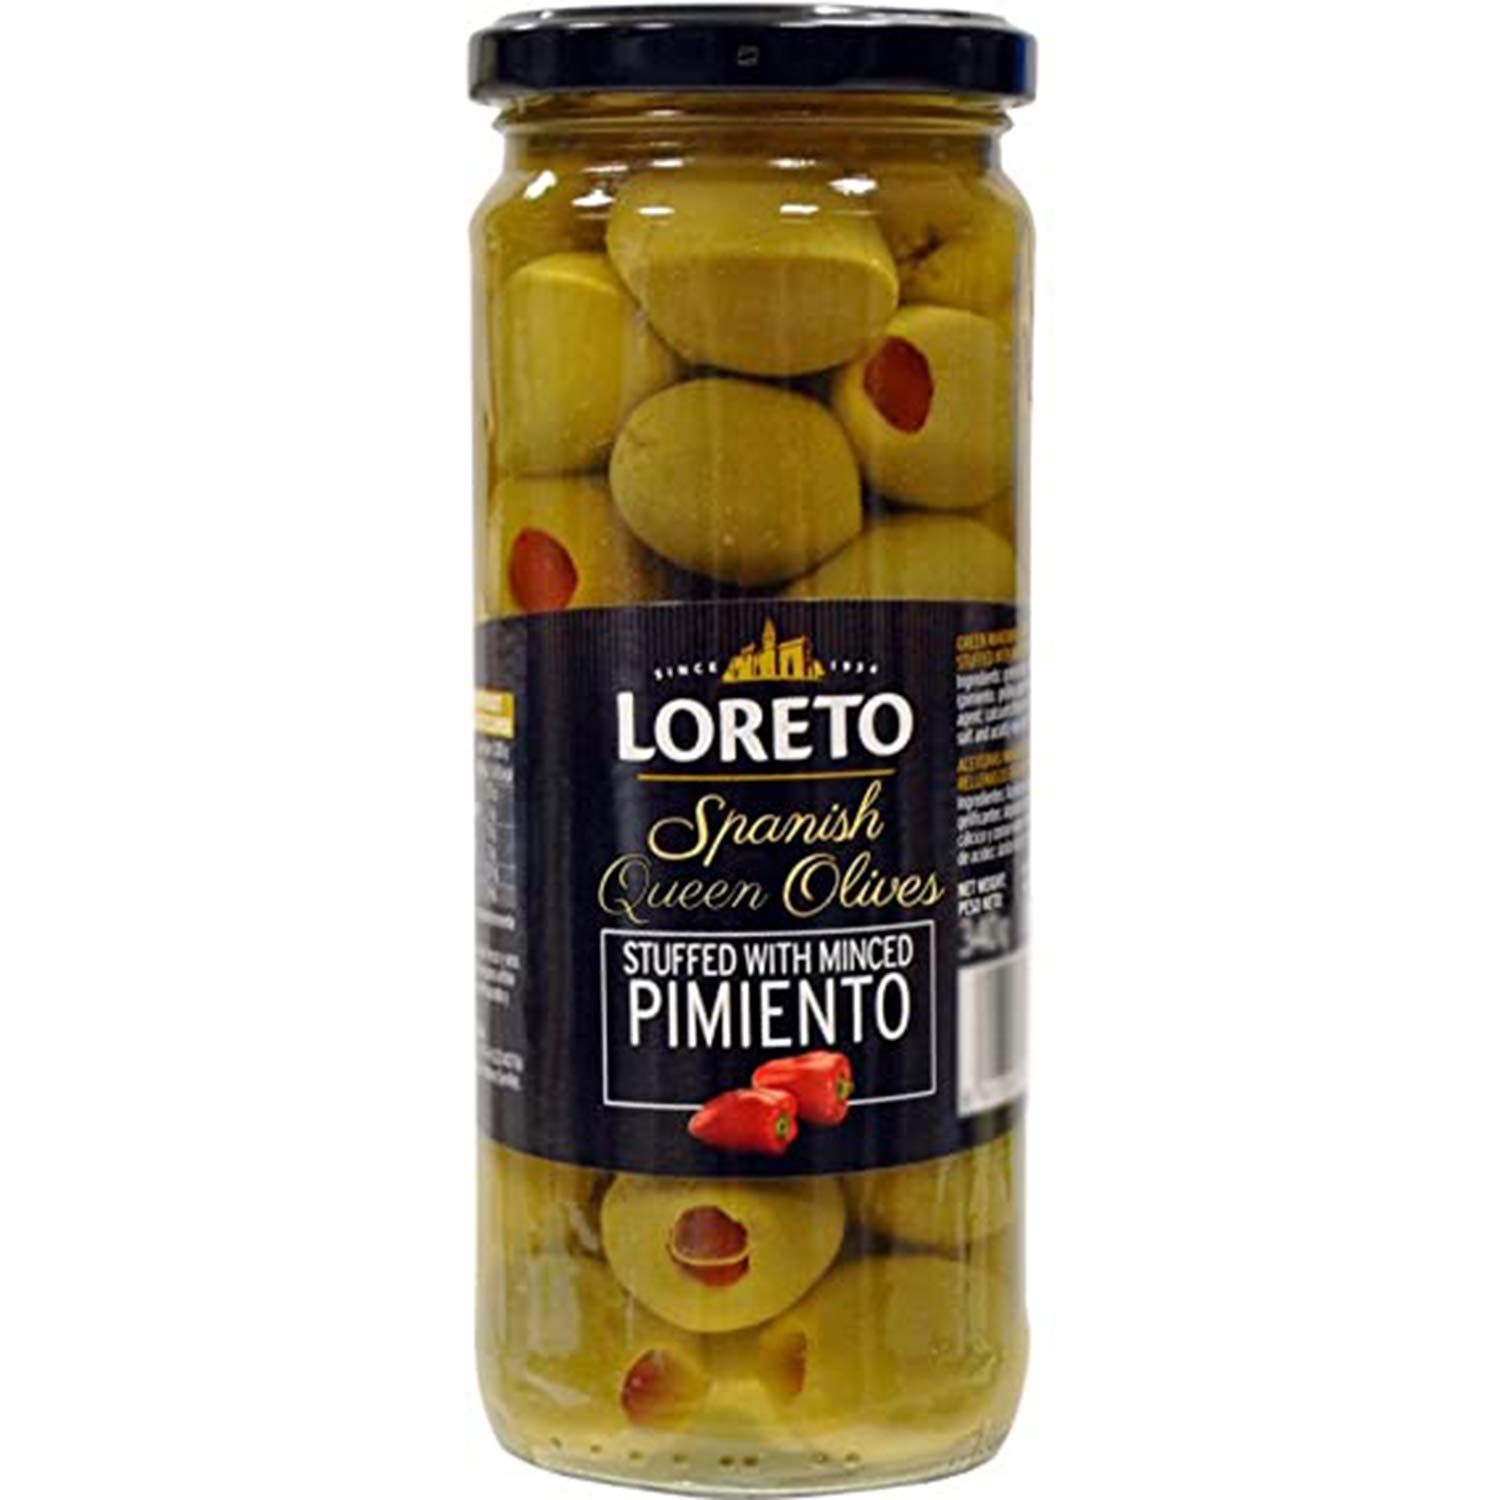 Loreto Minced Pimiento Stuffed Olives Image